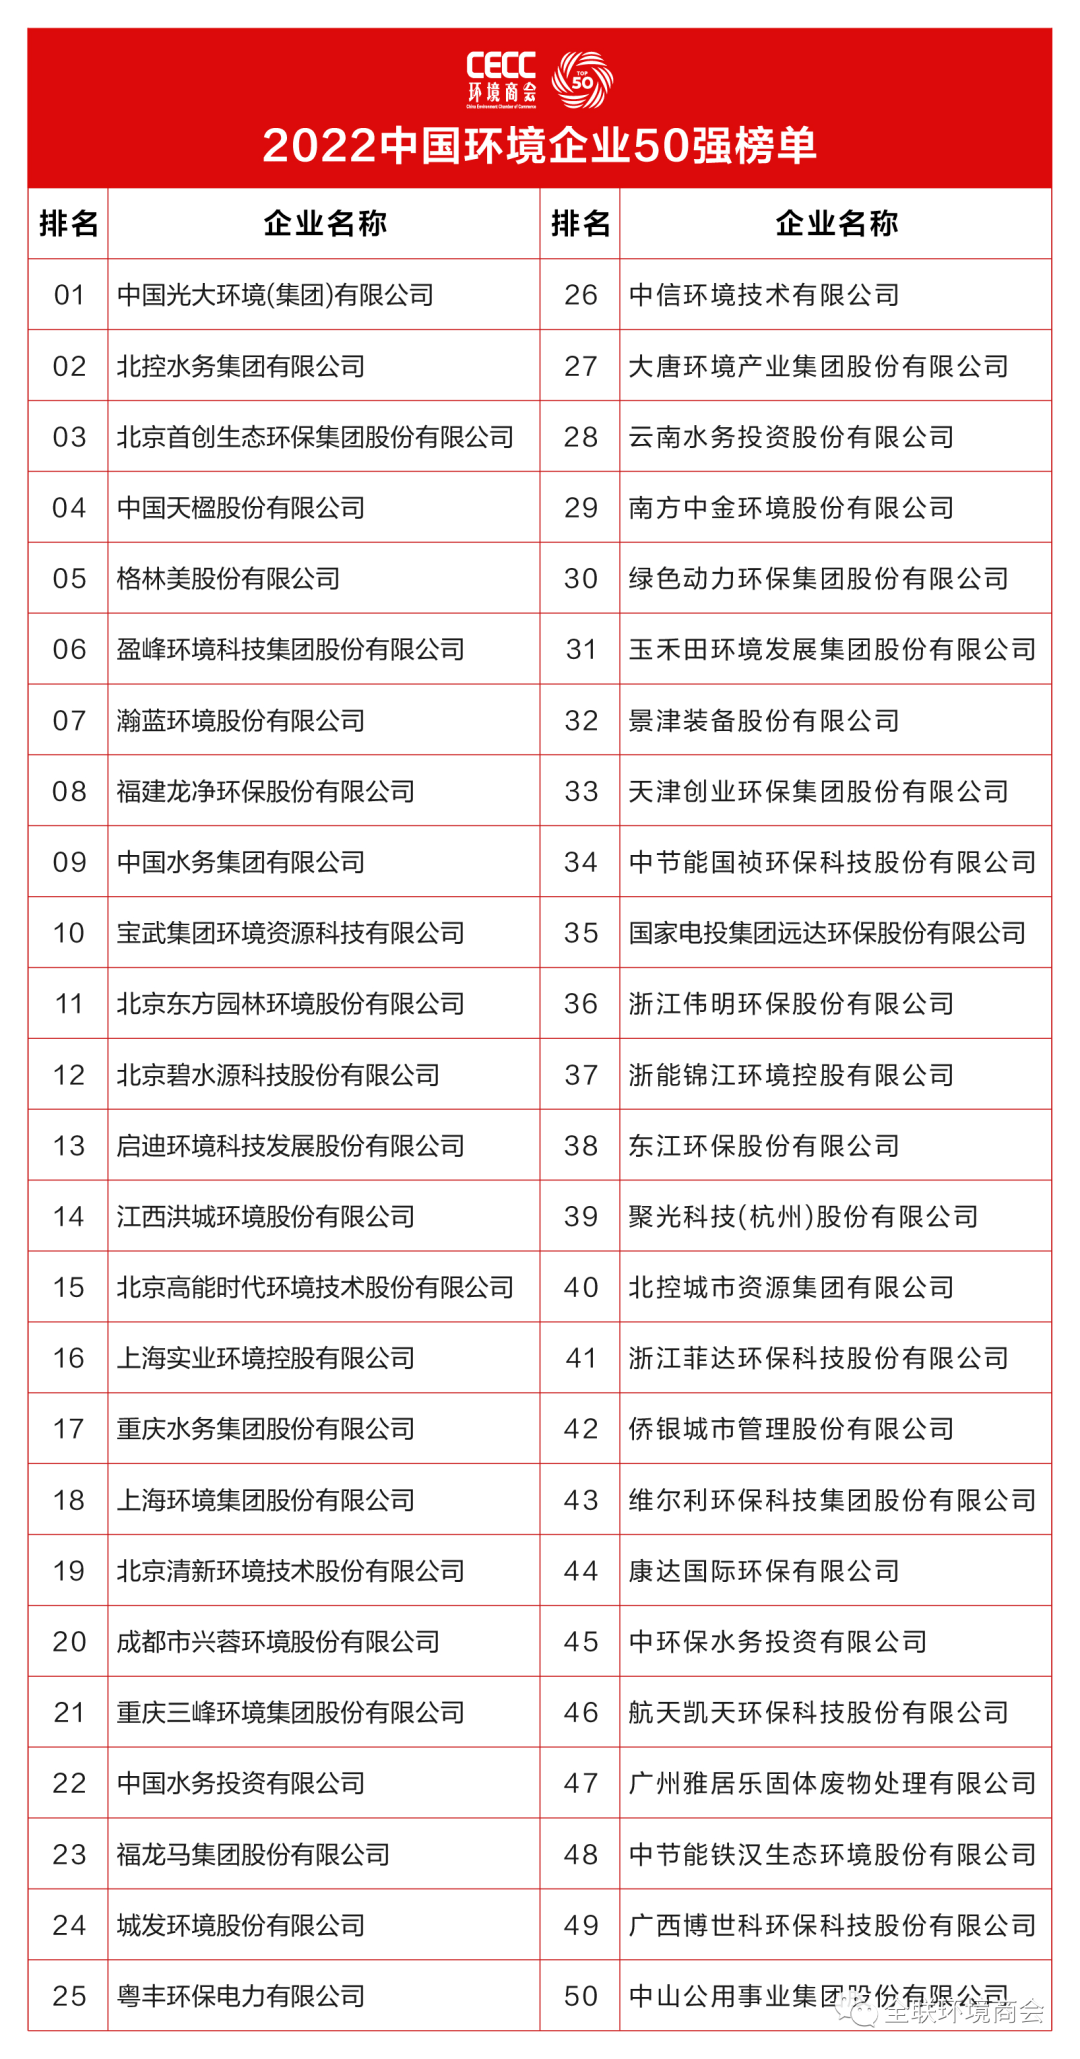 米乐M6官网2022华夏情况企业50强榜单颁发城发情况居第24位(图1)